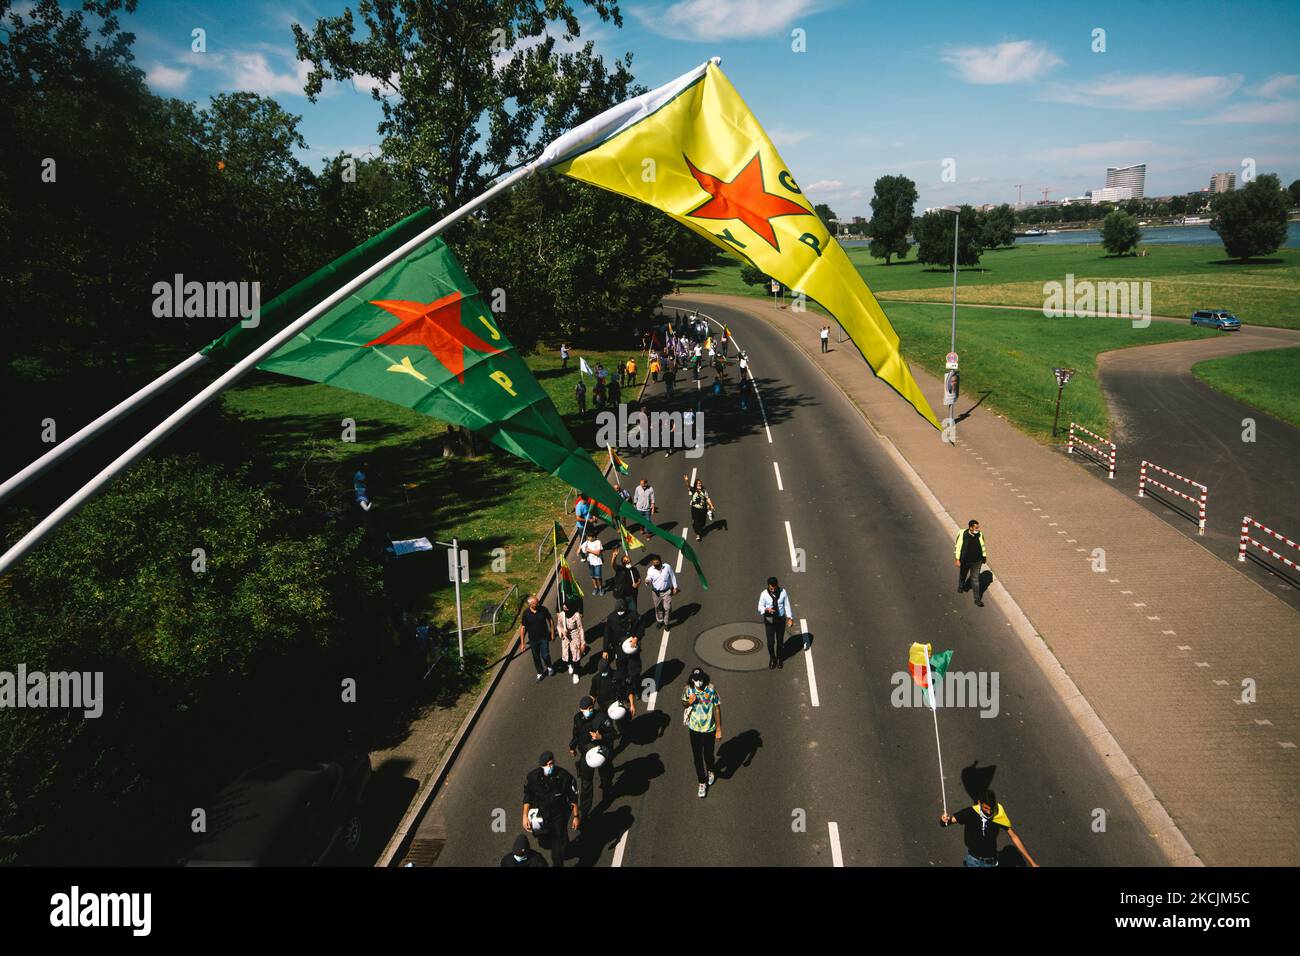 Des milliers de Kurdes protestent pour défendre le PKK à Düsseldorf, en Allemagne, sur 28 juillet 2021 (photo de Ying Tang/NurPhoto) Banque D'Images